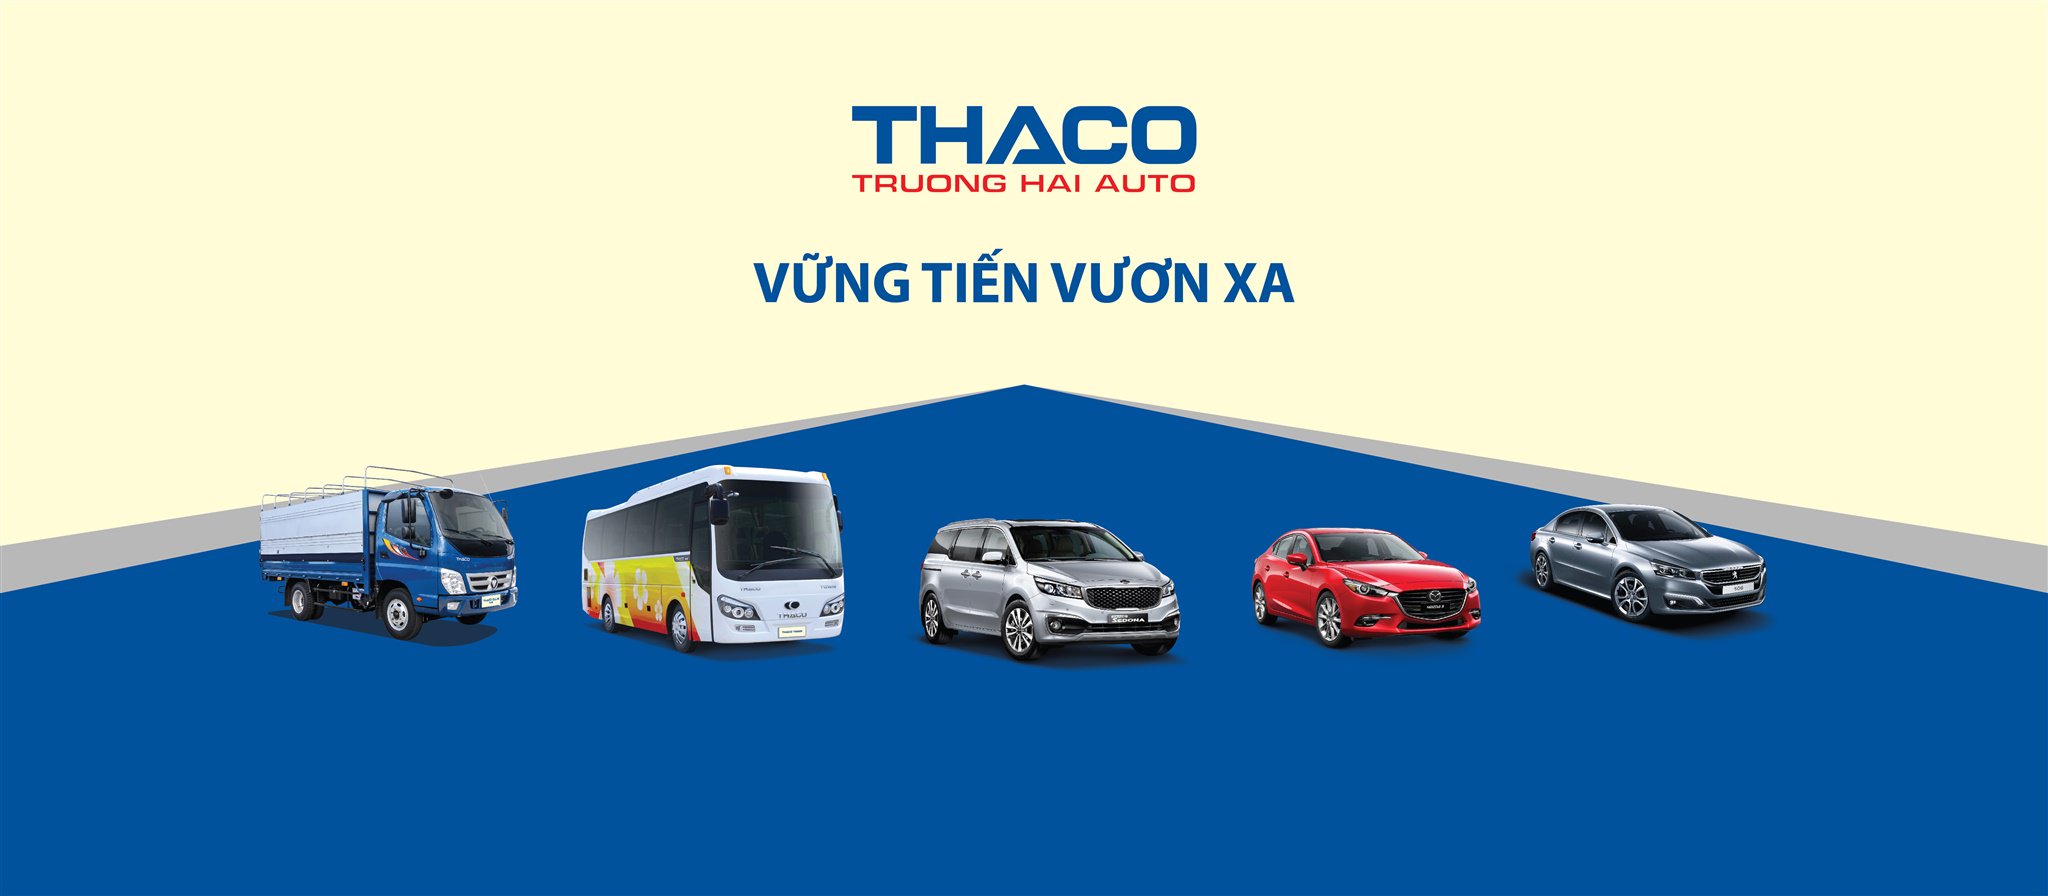 Xe tải Thaco là một lựa chọn hoàn hảo cho những người đang tìm kiếm một chiếc xe tải ấn tượng và chất lượng. Hãy xem qua bức hình liên quan và khám phá những tính năng nổi bật của xe Thaco mà bạn sẽ không muốn bỏ lỡ.